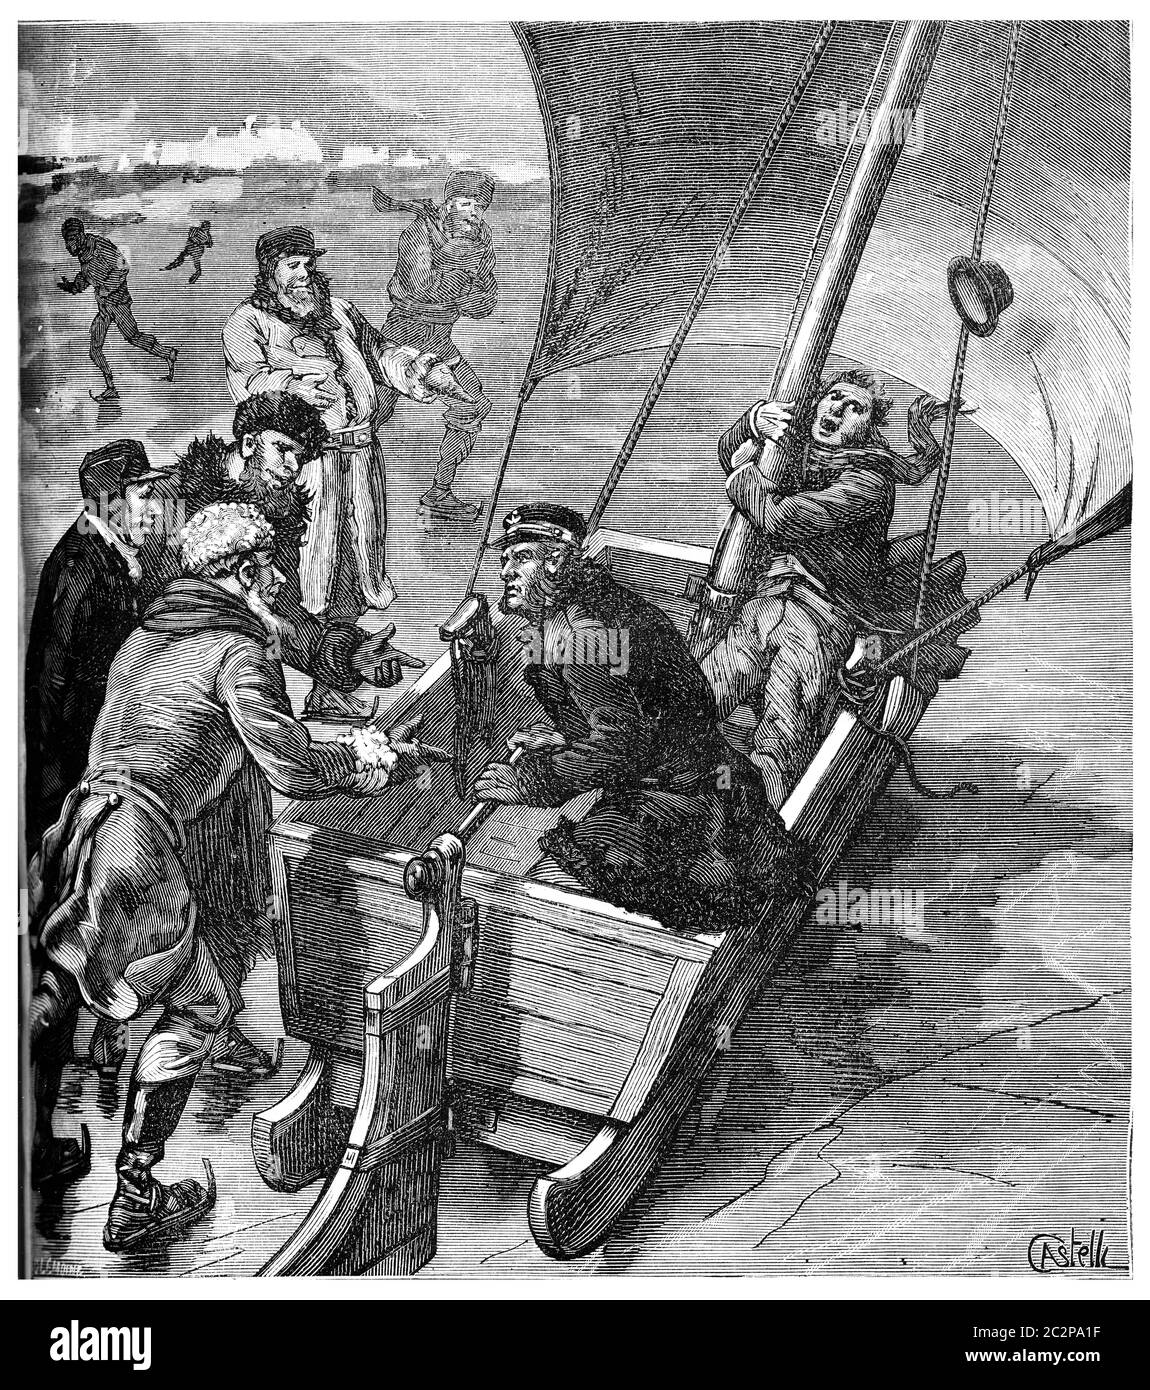 Siete años en la tierra del bacalao del Atlántico, el velo de Sleigh, la ilustración grabada vintage. Journal des Voyage, Travel Journal, (1880-81). Foto de stock